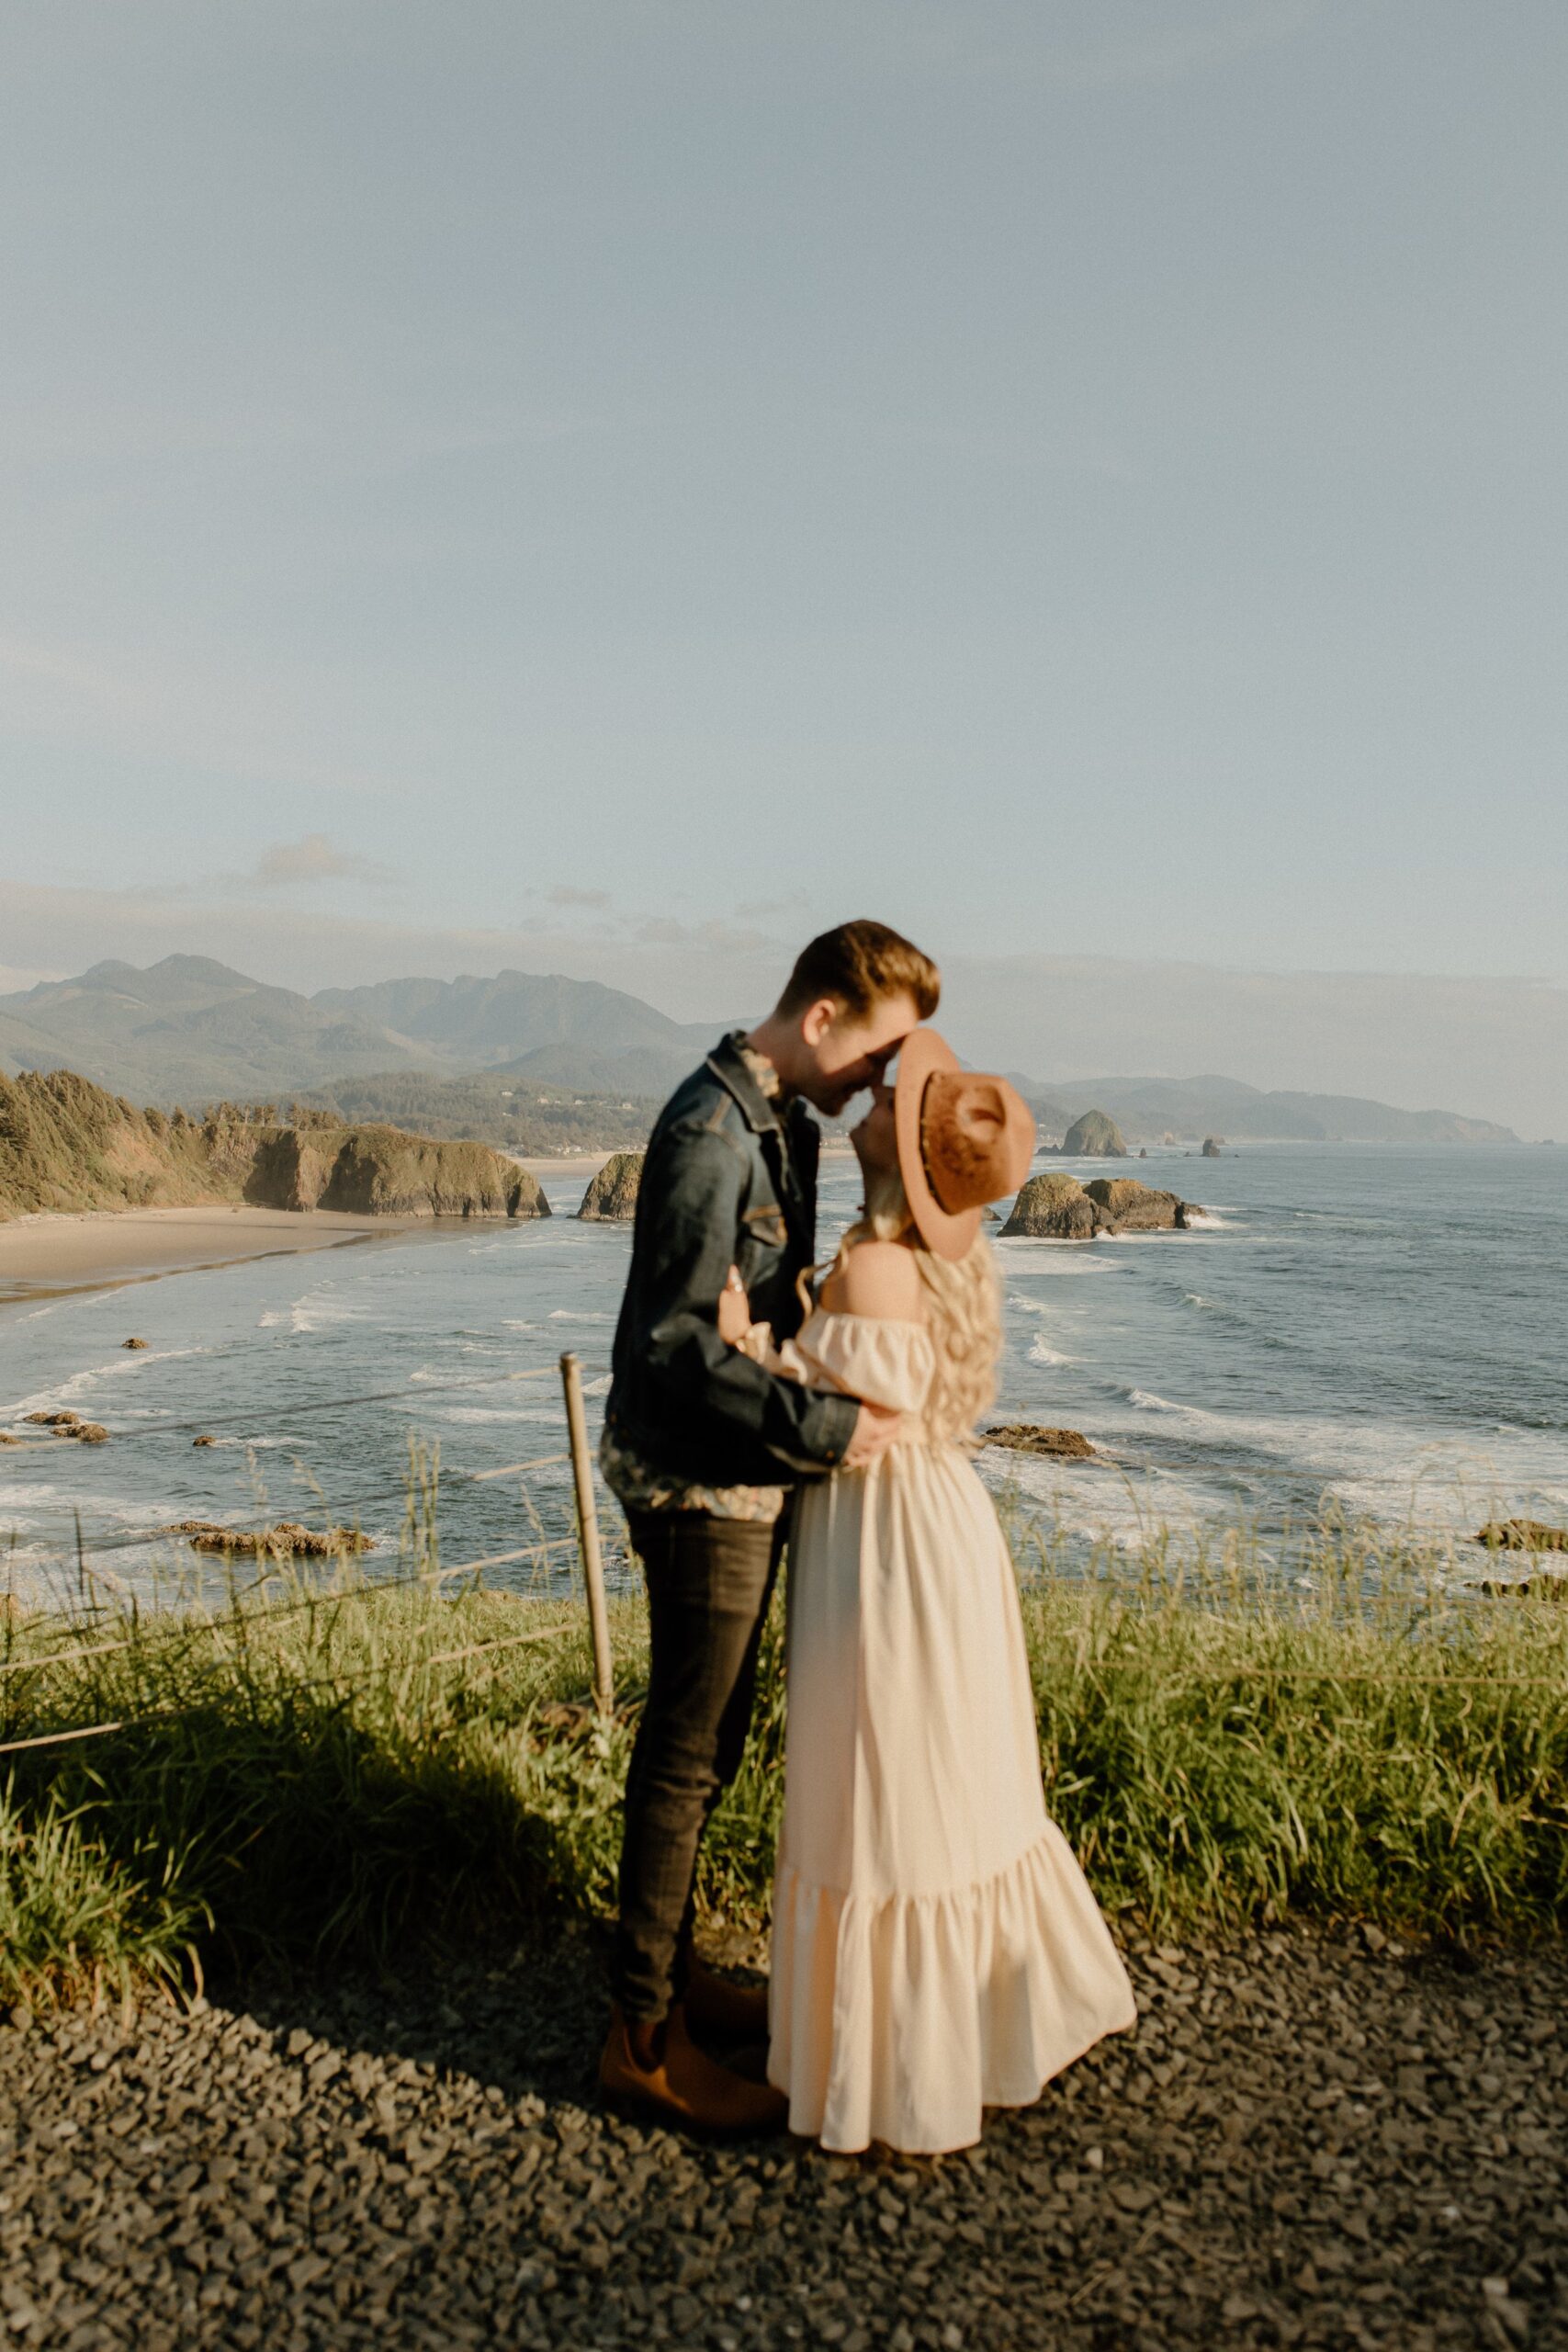 Man kissing woman on cliff near beach